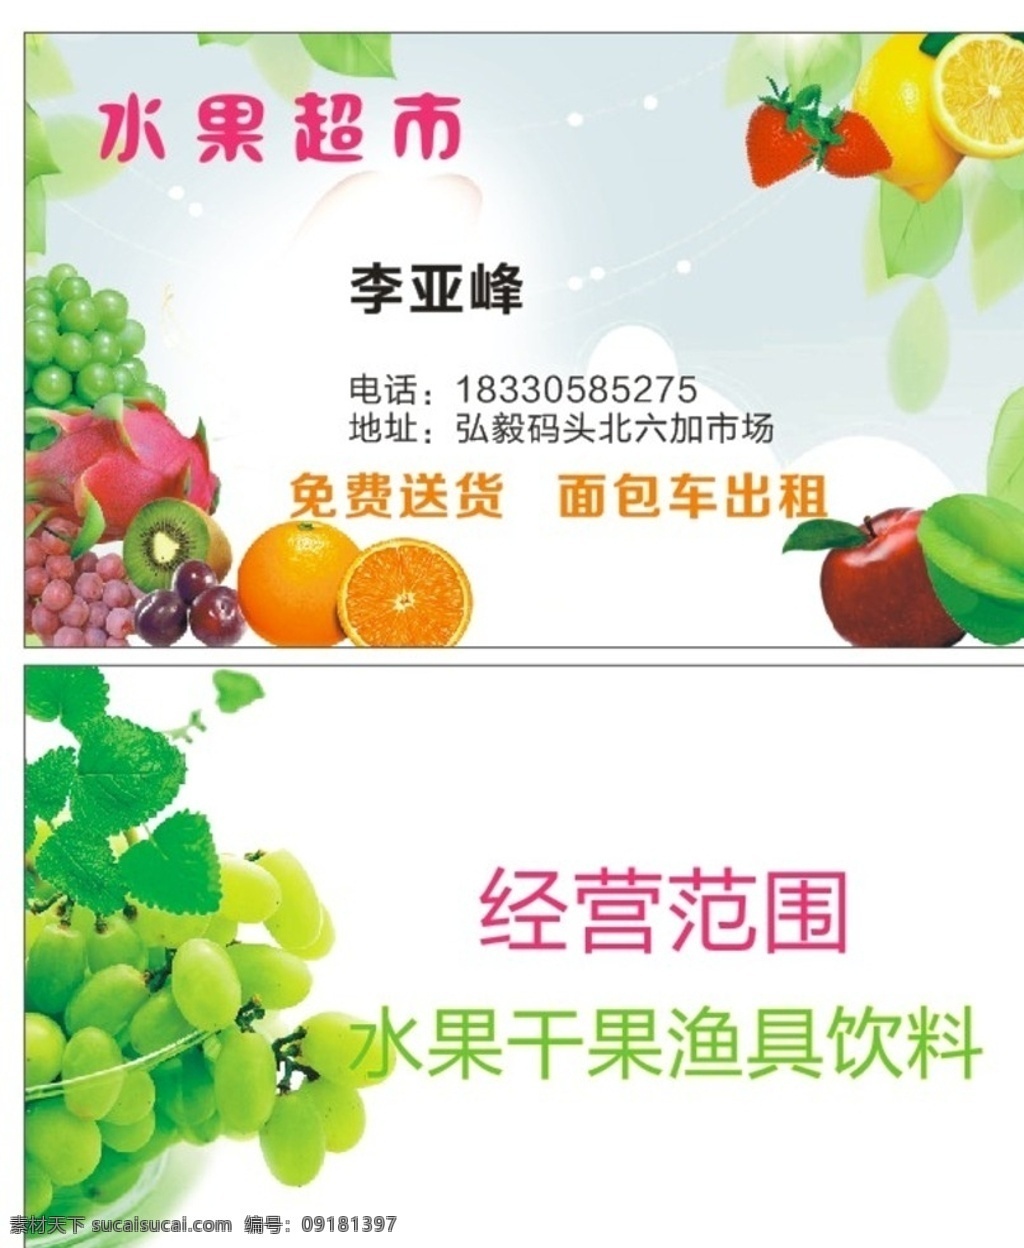 水果超市名片 水果 超市 名片 绿色 苹果 香蕉 橙子 葡萄 草莓 哈密瓜 名片卡片